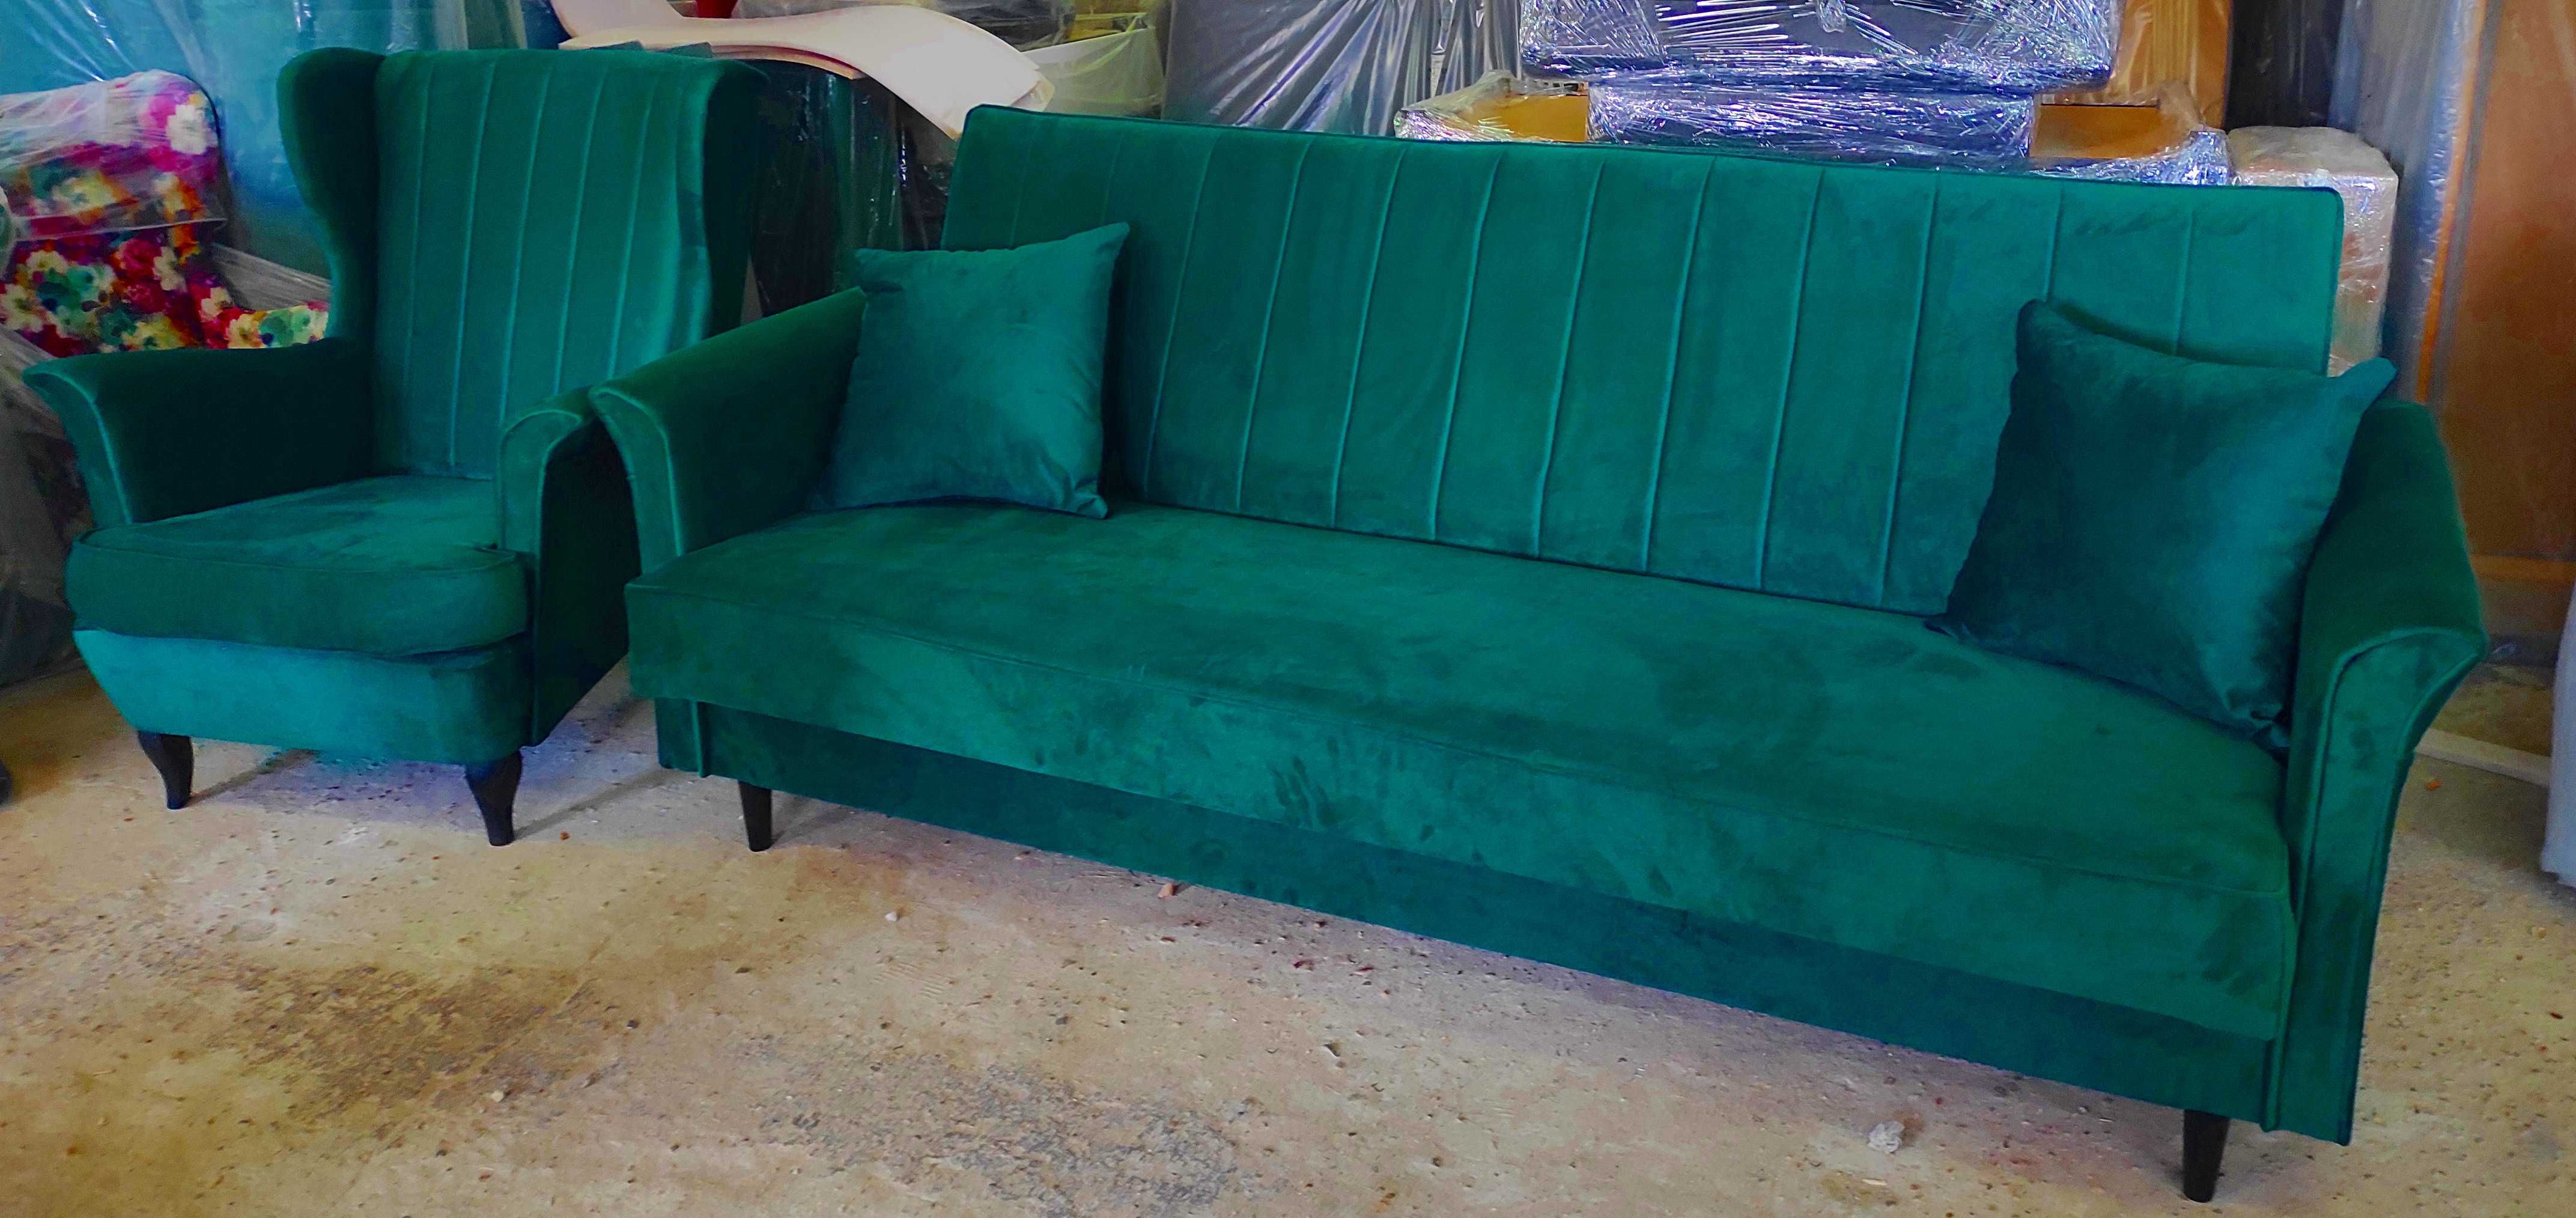 RATY komplet zestaw sofa kanapa rozkładana łóżko wersalka POJEMNIK